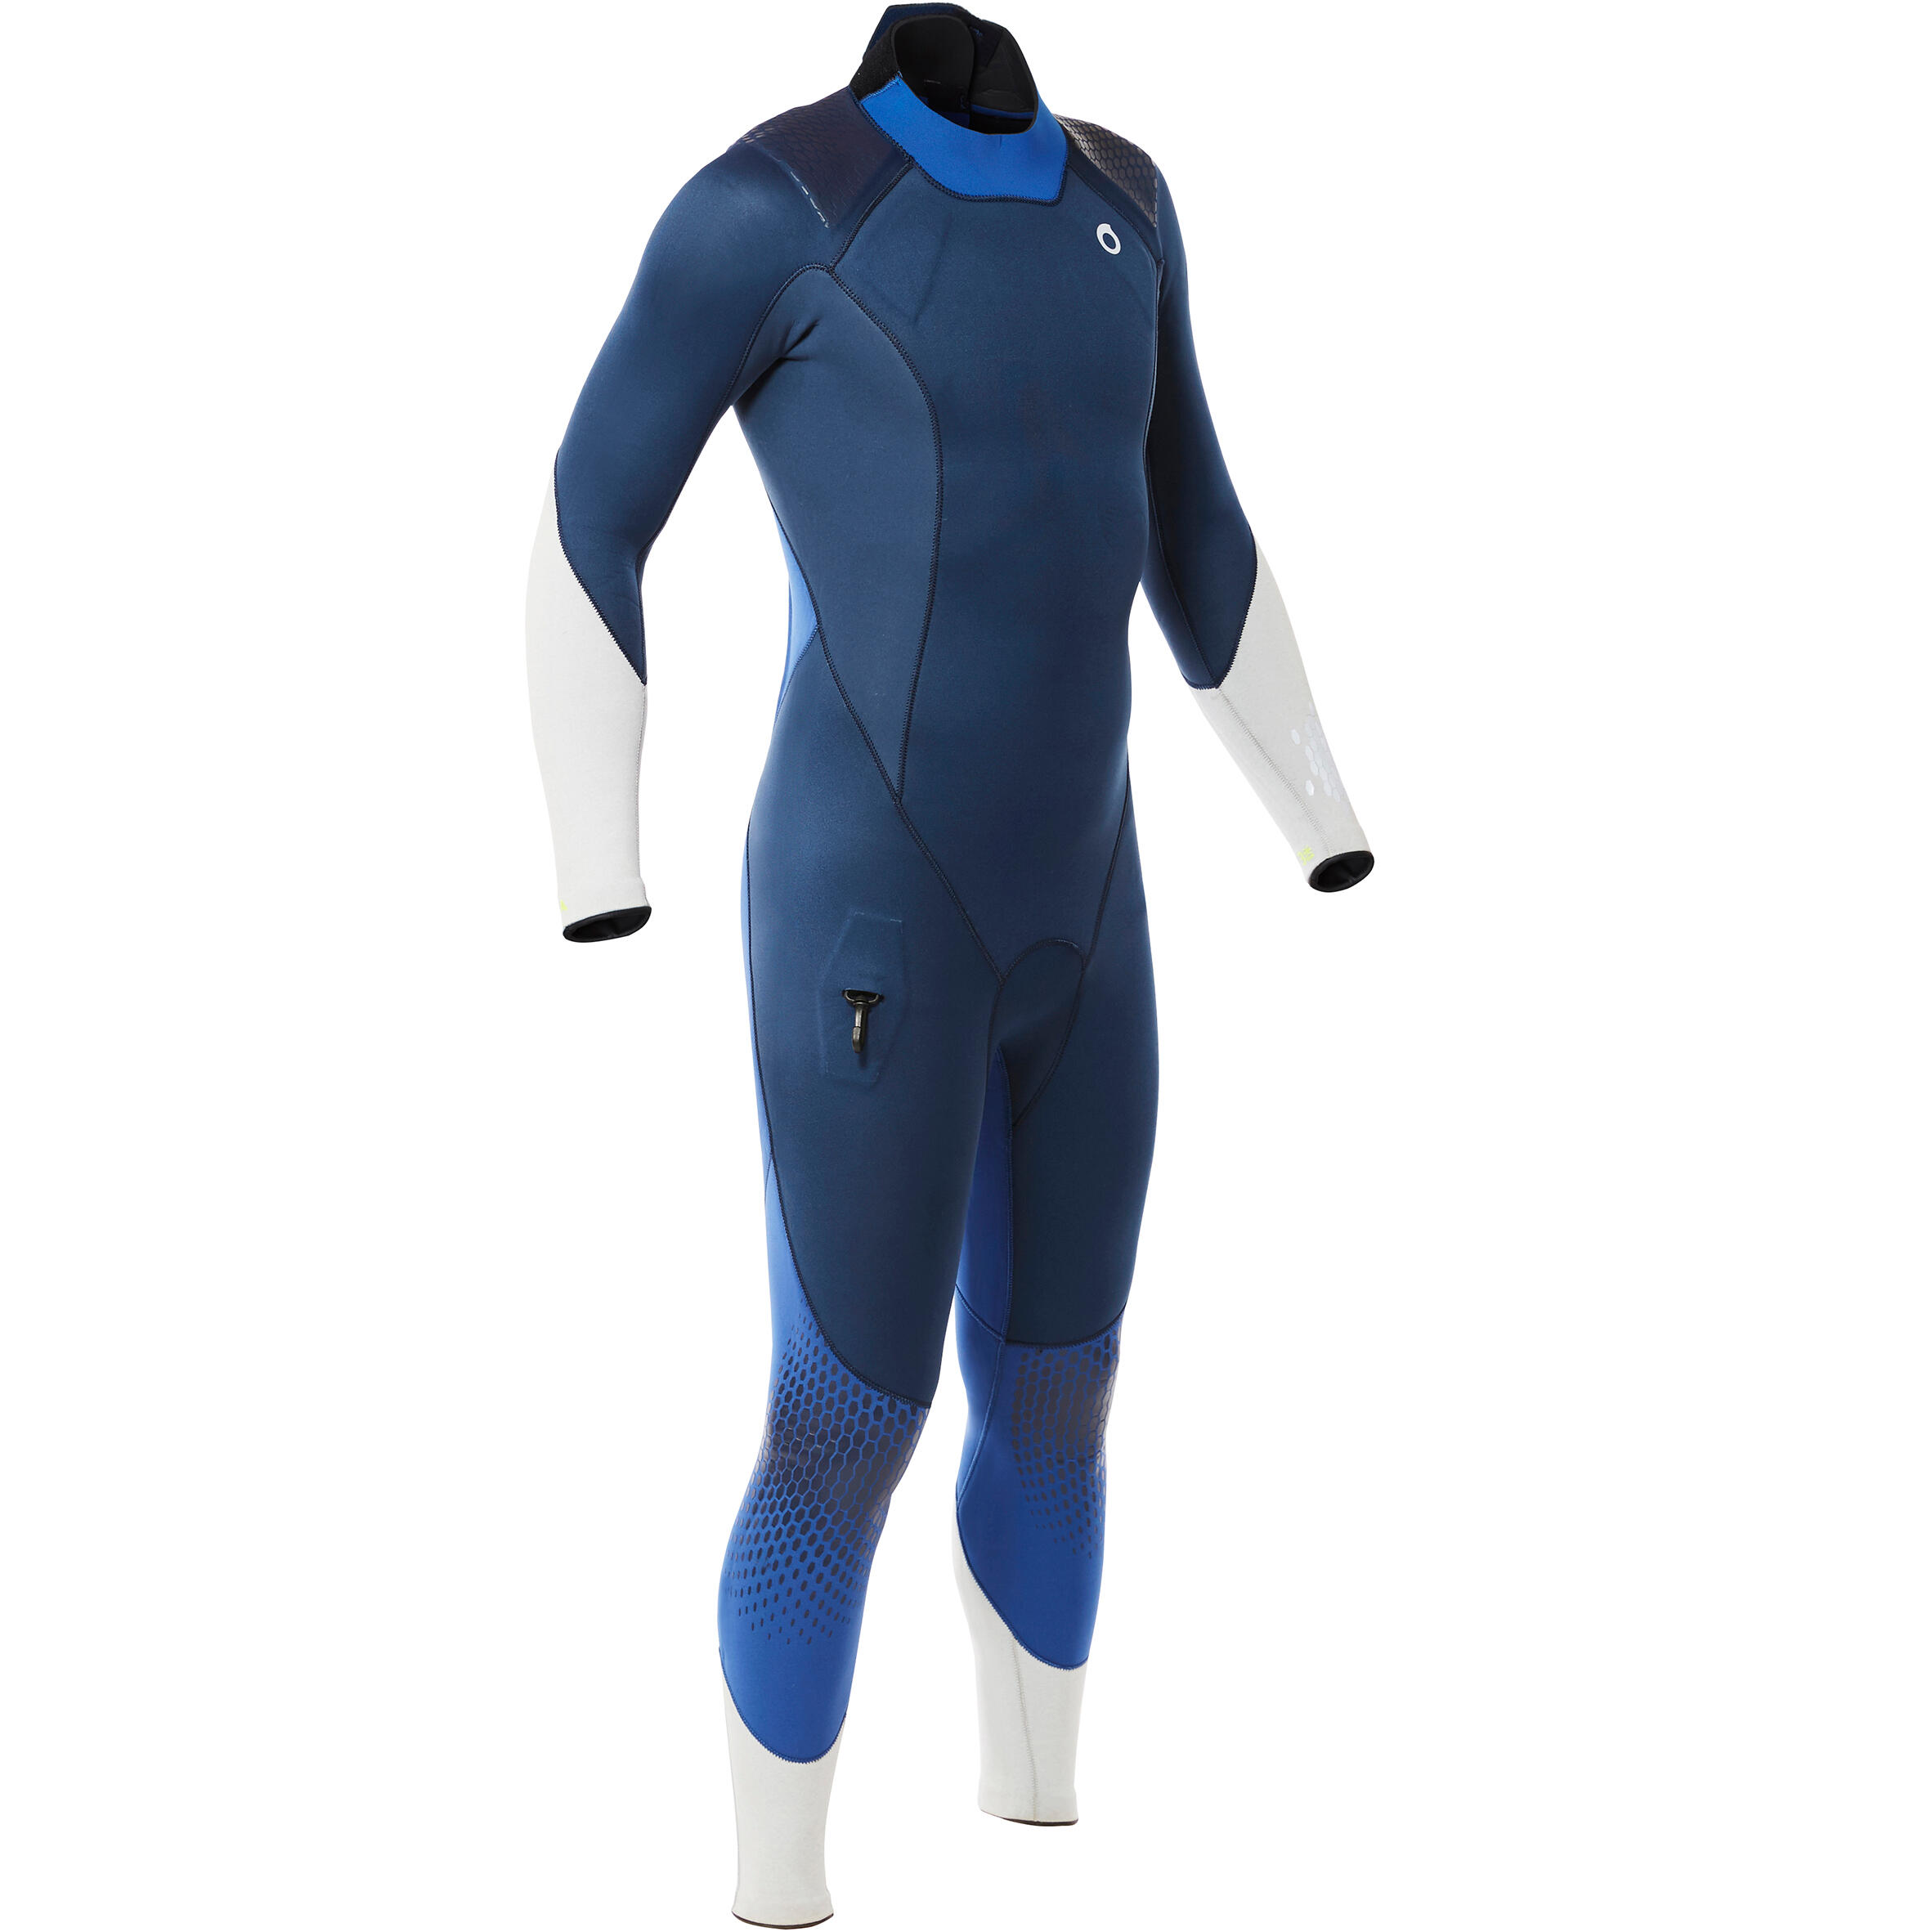 Men's diving wetsuit 3 mm neoprene SCD 900 turquin and overseas blue 1/10